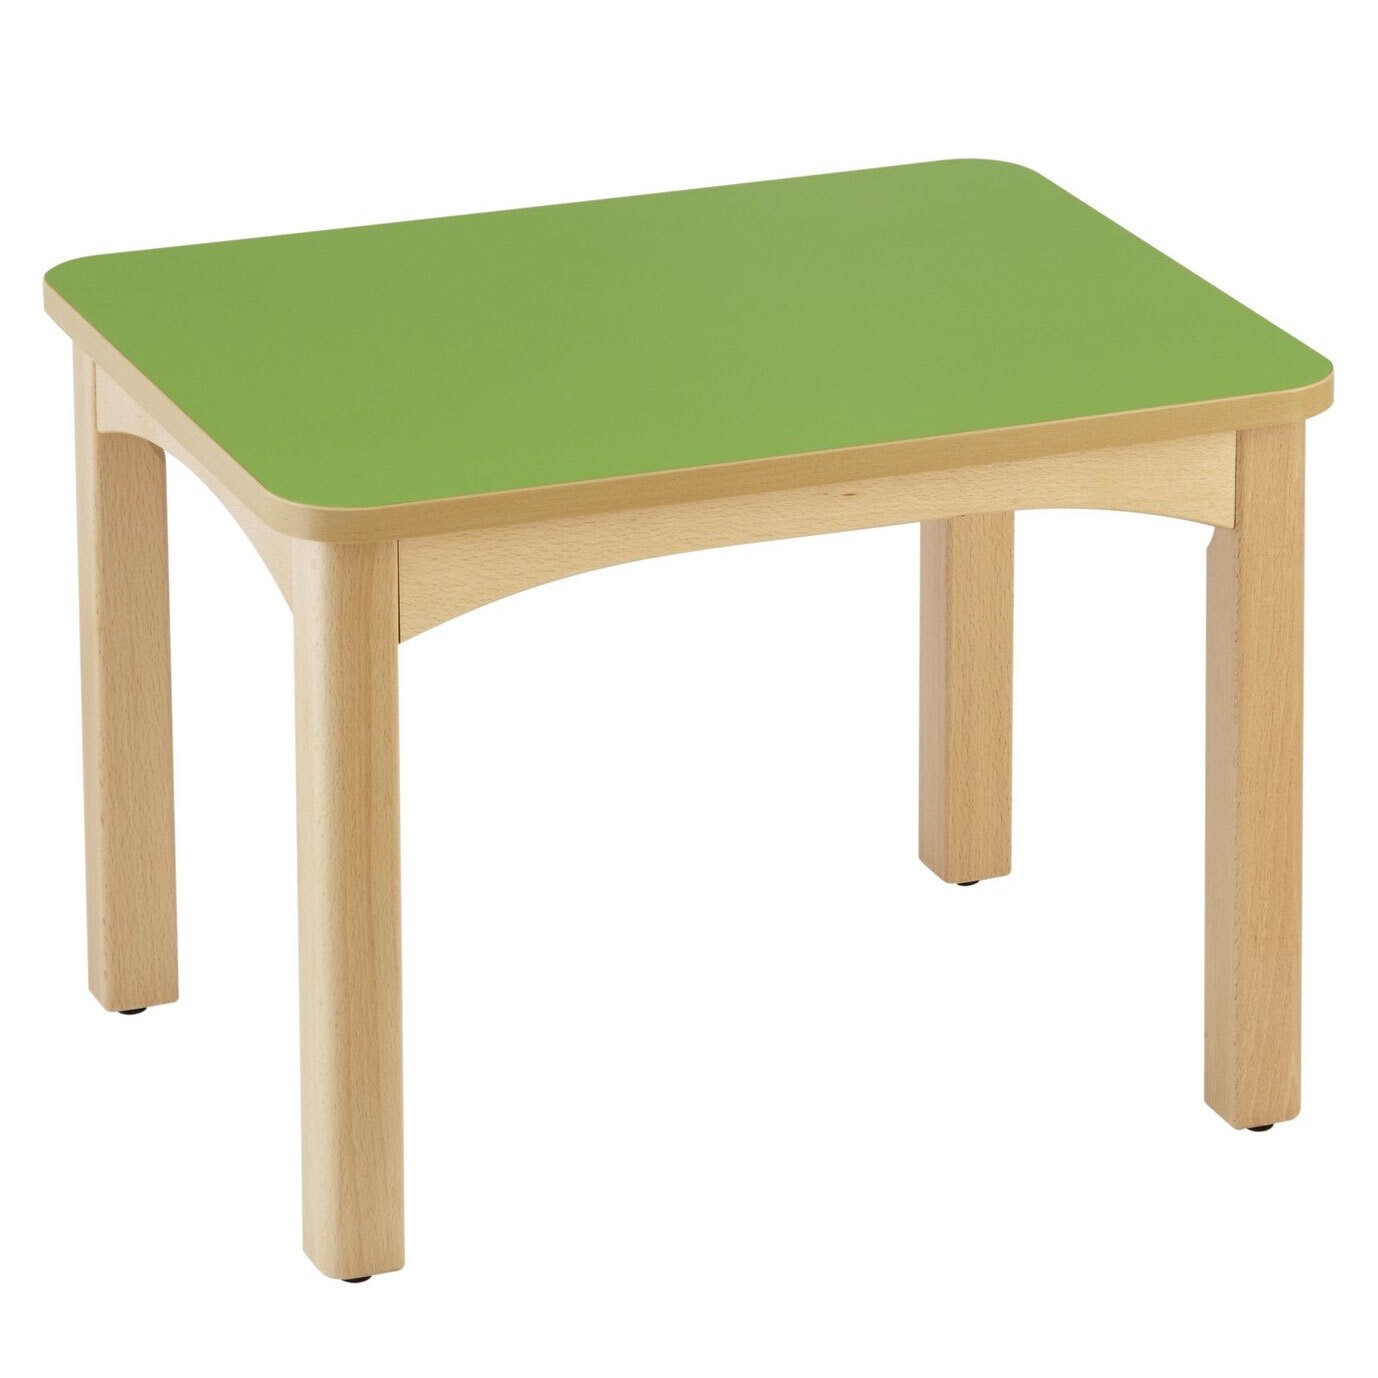 Table en bois pour crèche 60 x 50 cm t0 vert